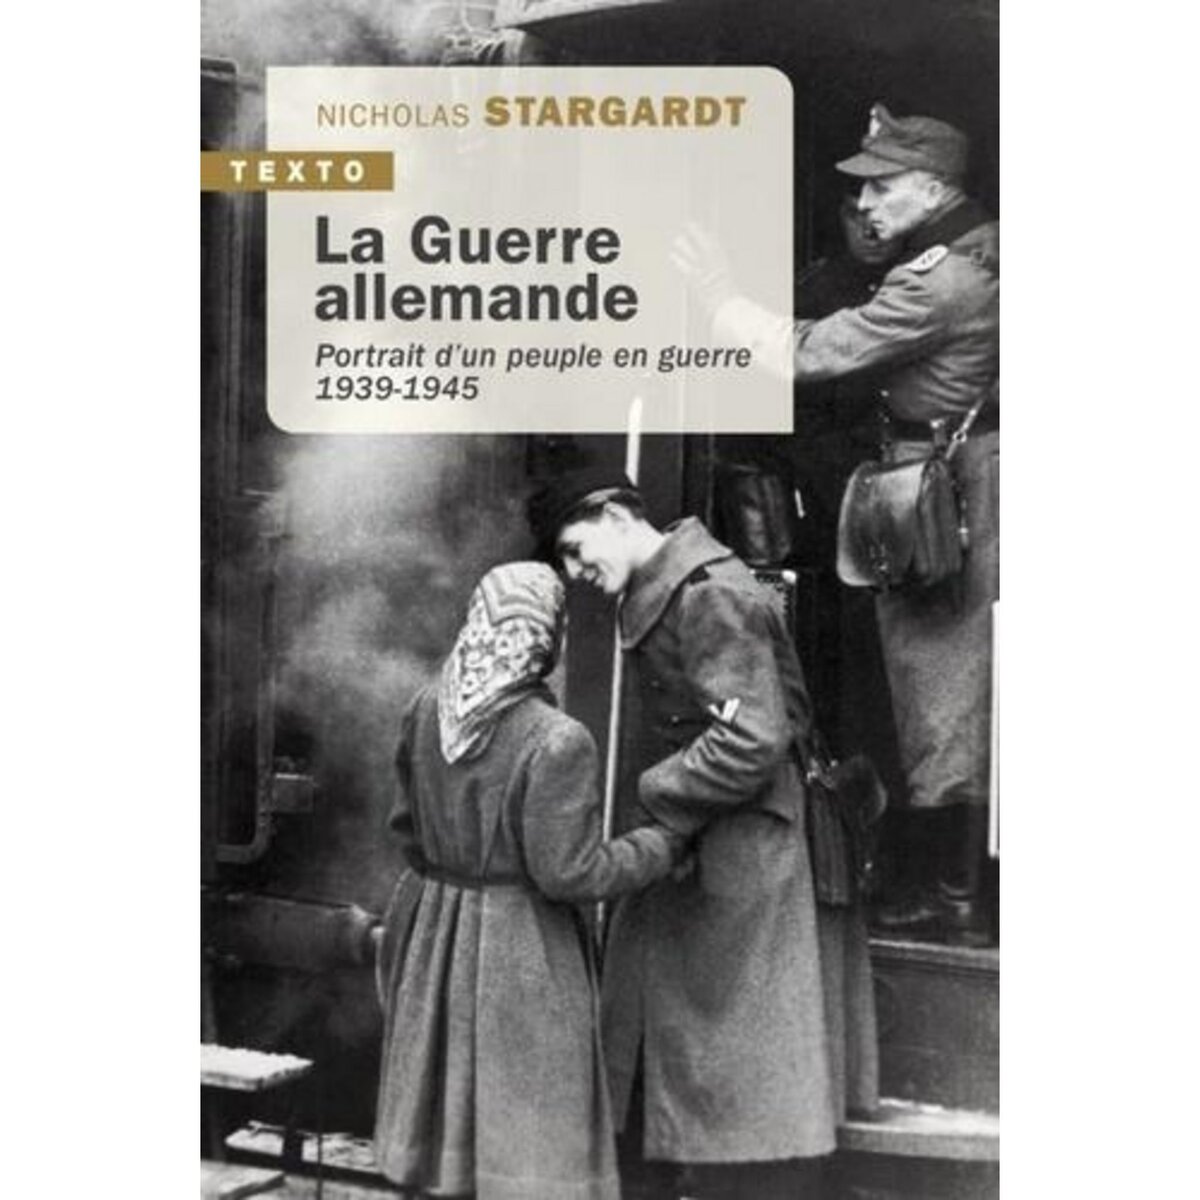  LA GUERRE ALLEMANDE. PORTRAIT D'UN PEUPLE EN GUERRE 1939-1945, Stargardt Nicholas